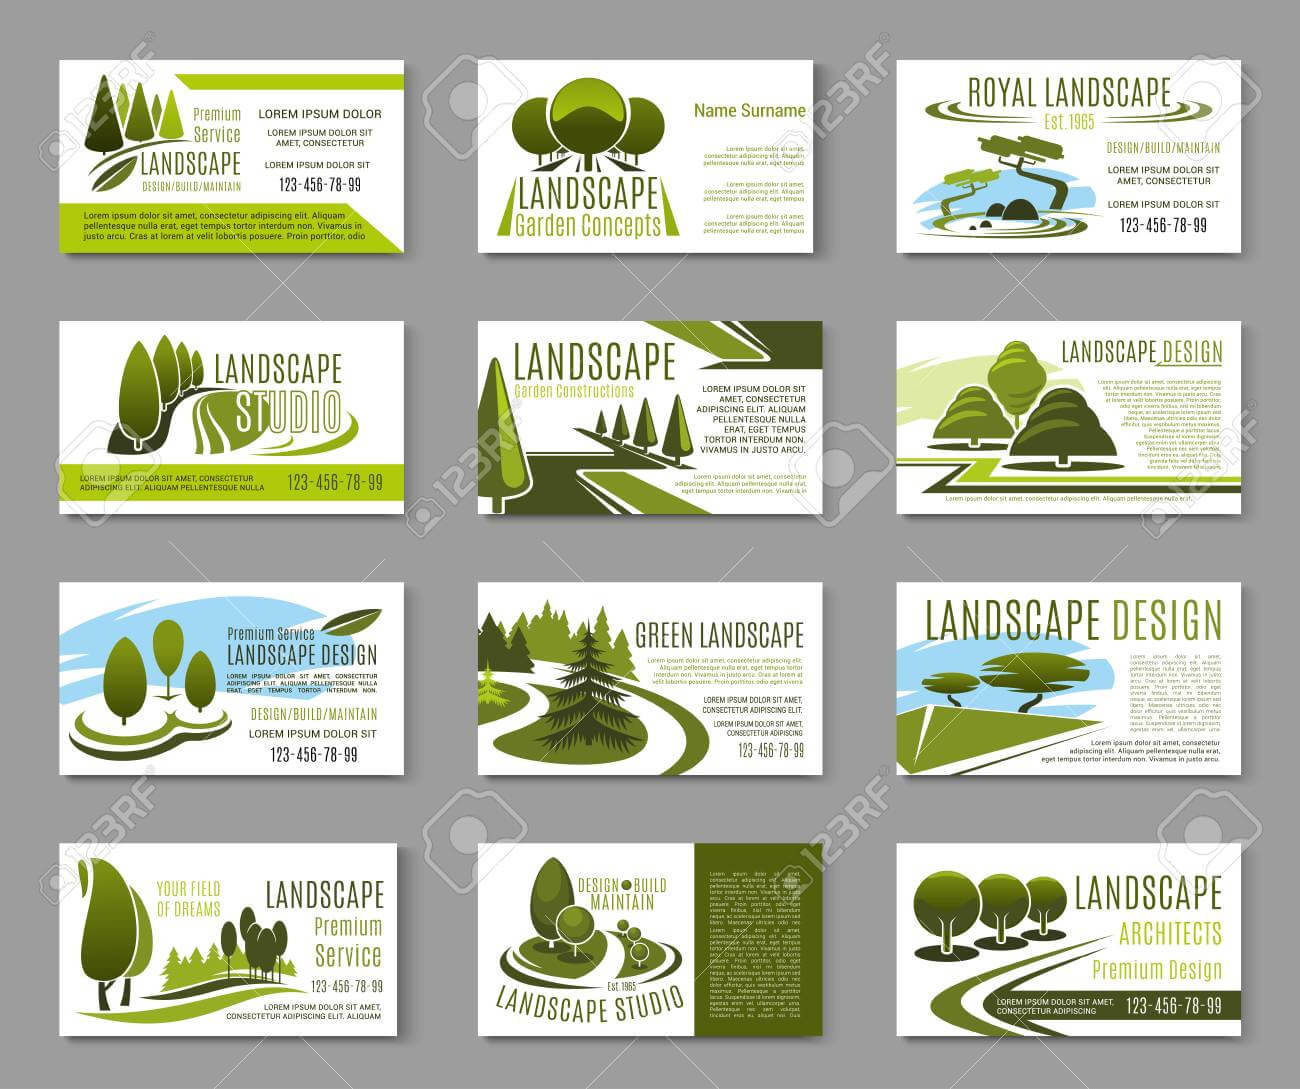 Landscape Design Studio Business Card Template Within Landscaping Business Card Template